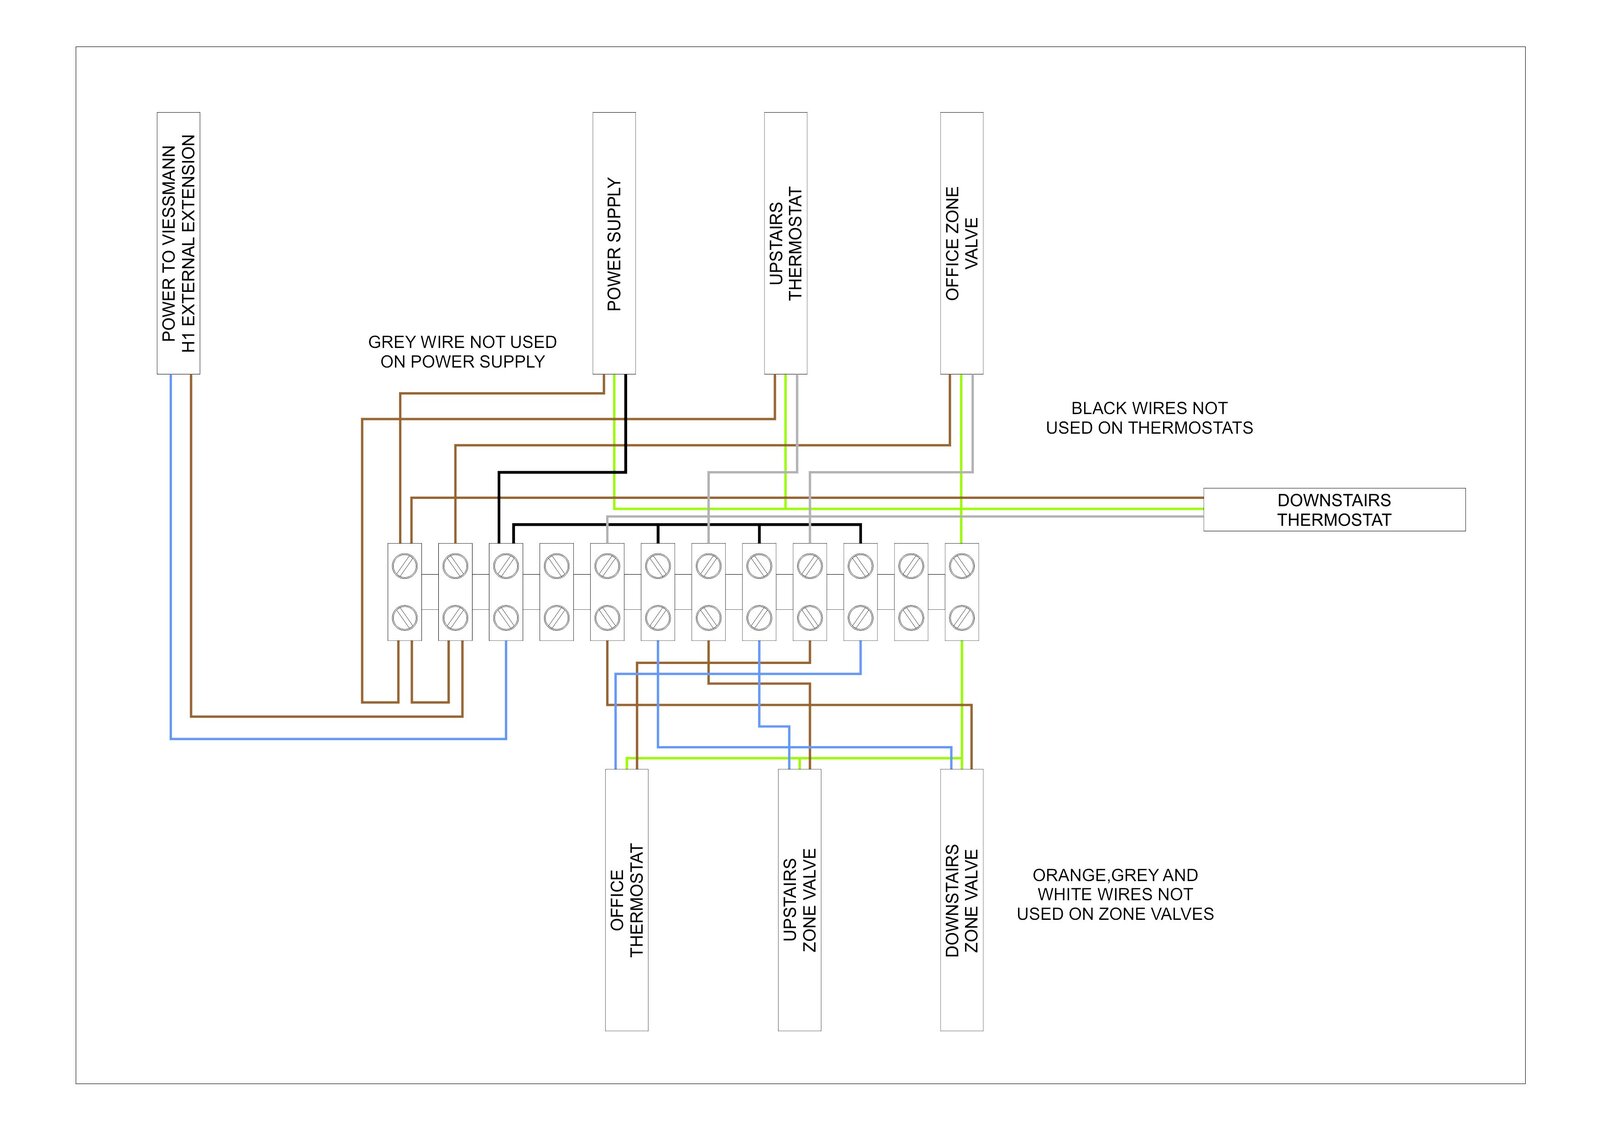 Viessmann Central Heating Wiring, Viessmann Vitodens 100 System Boiler Wiring Diagram